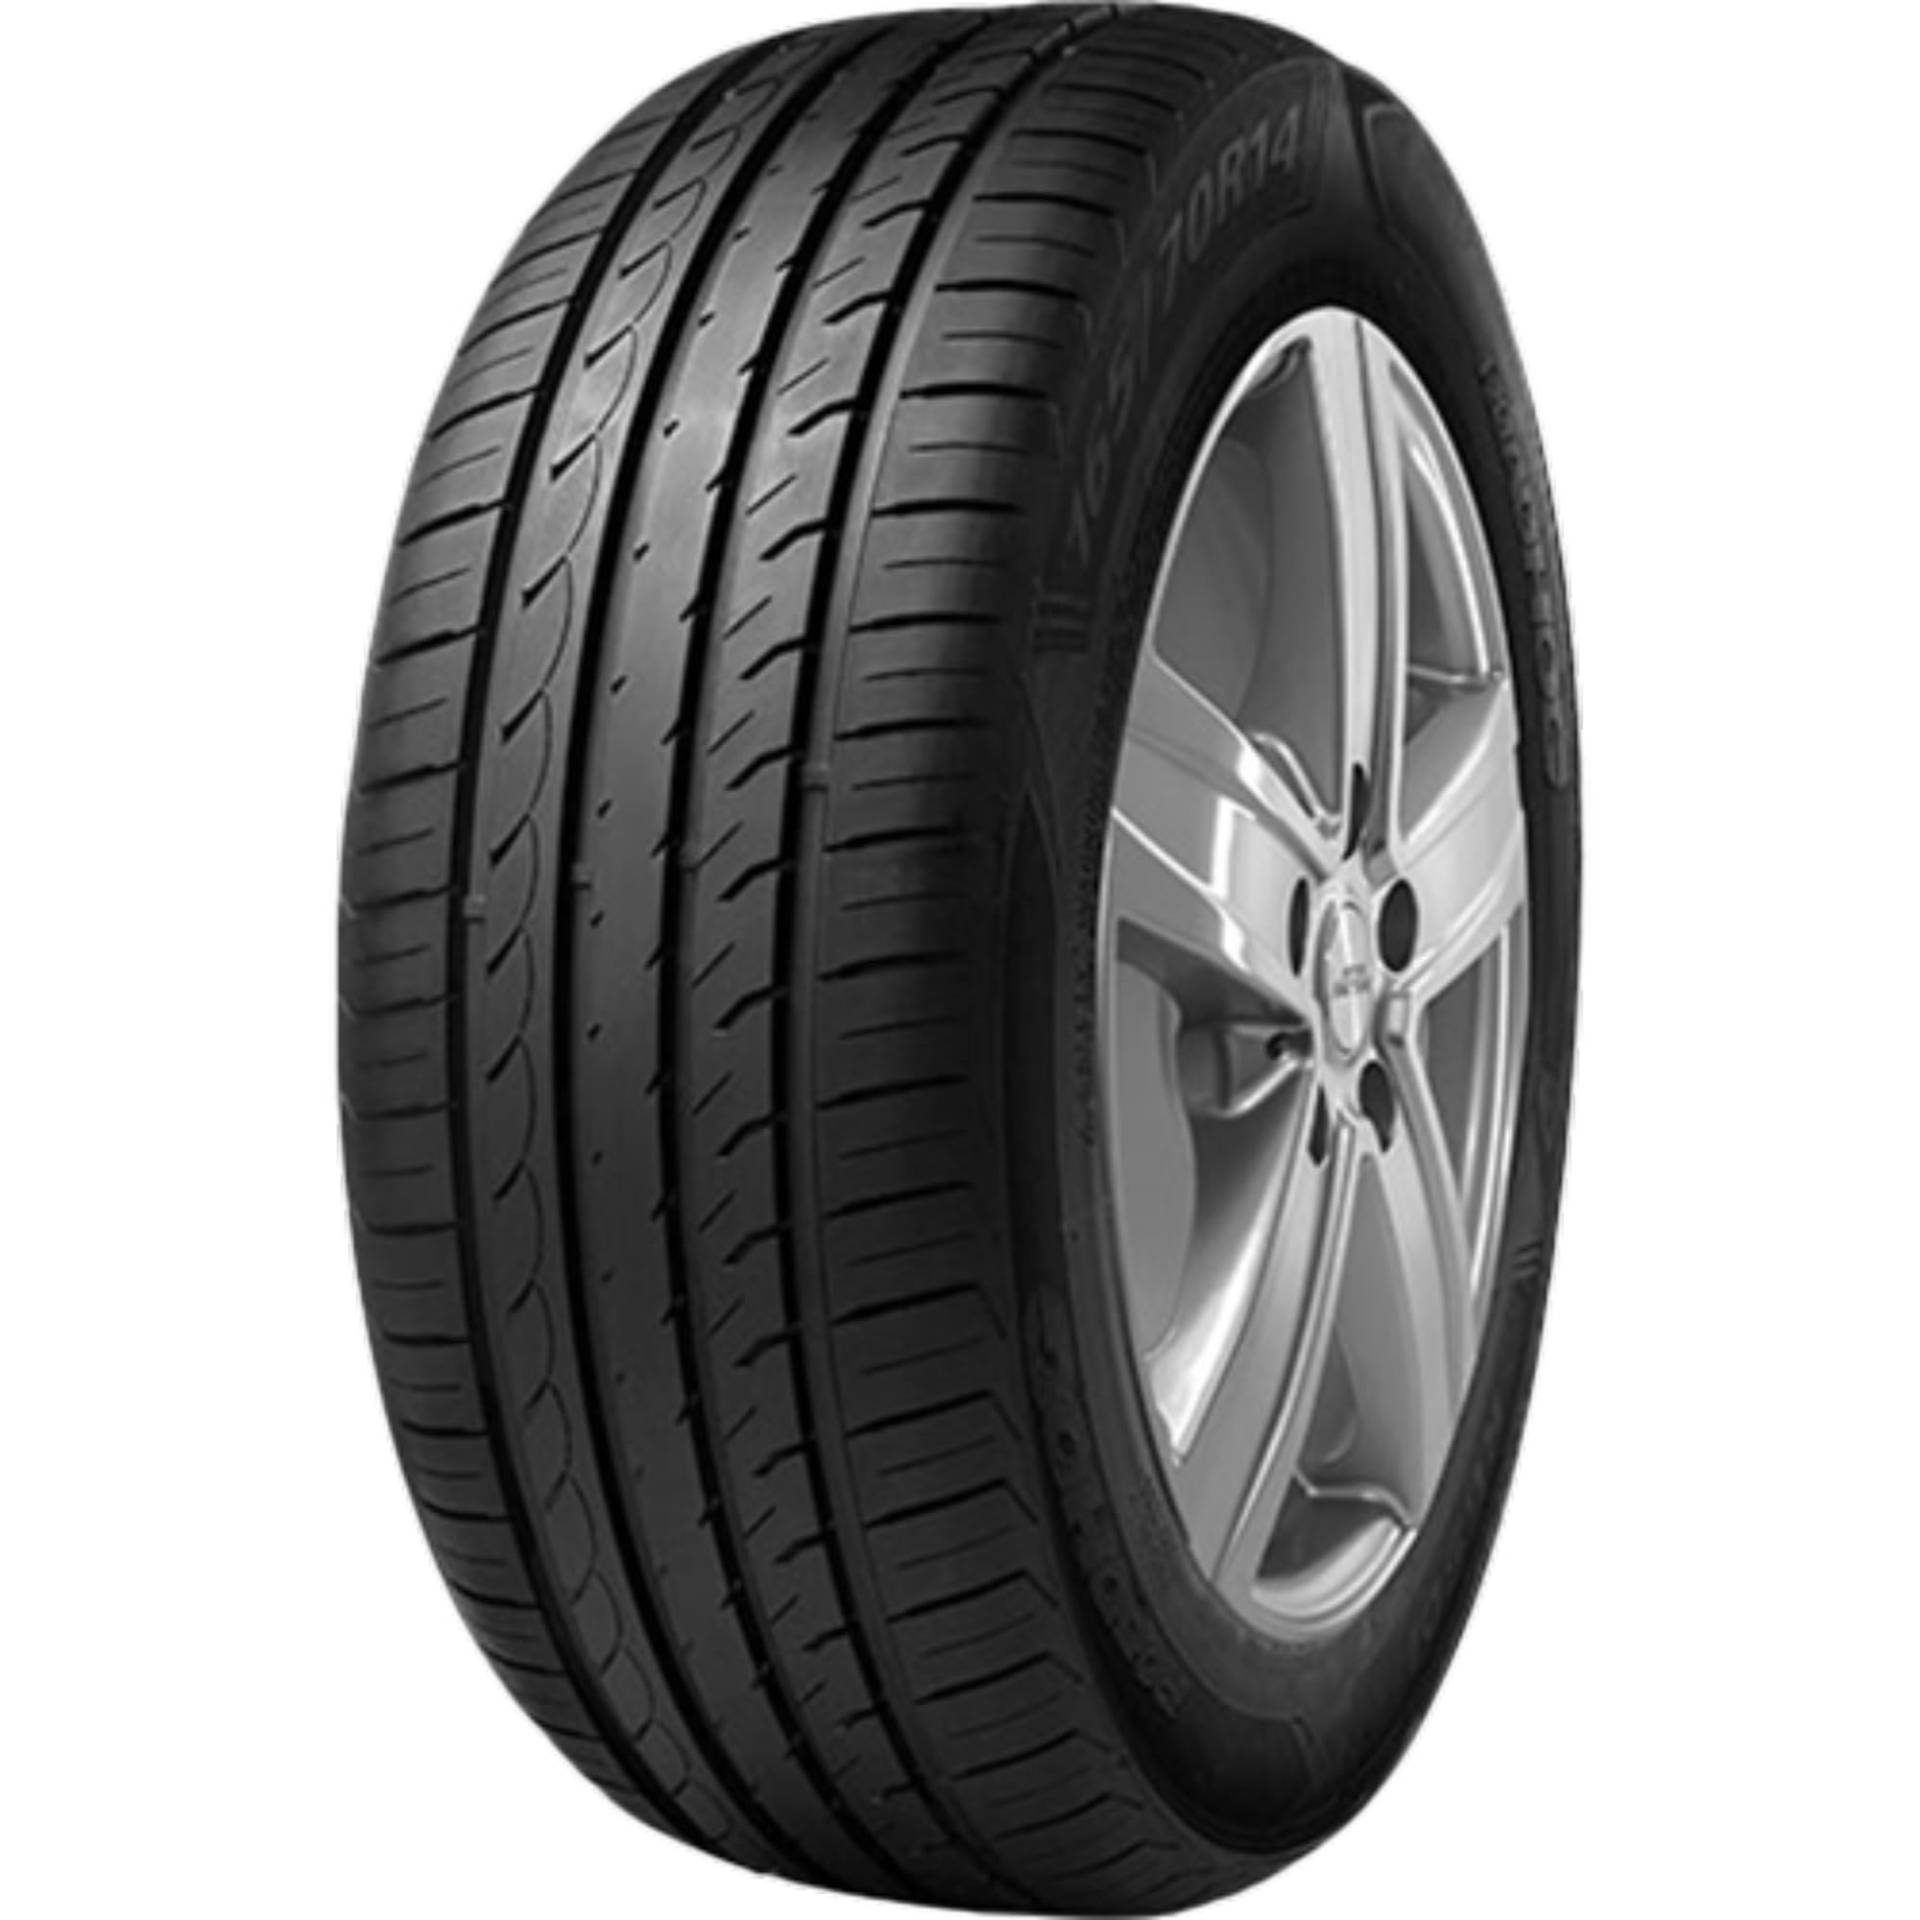 Reifen pneus Roadhog Rg s01 145 70 R13 71T TL sommerreifen autoreifen von Roadhog